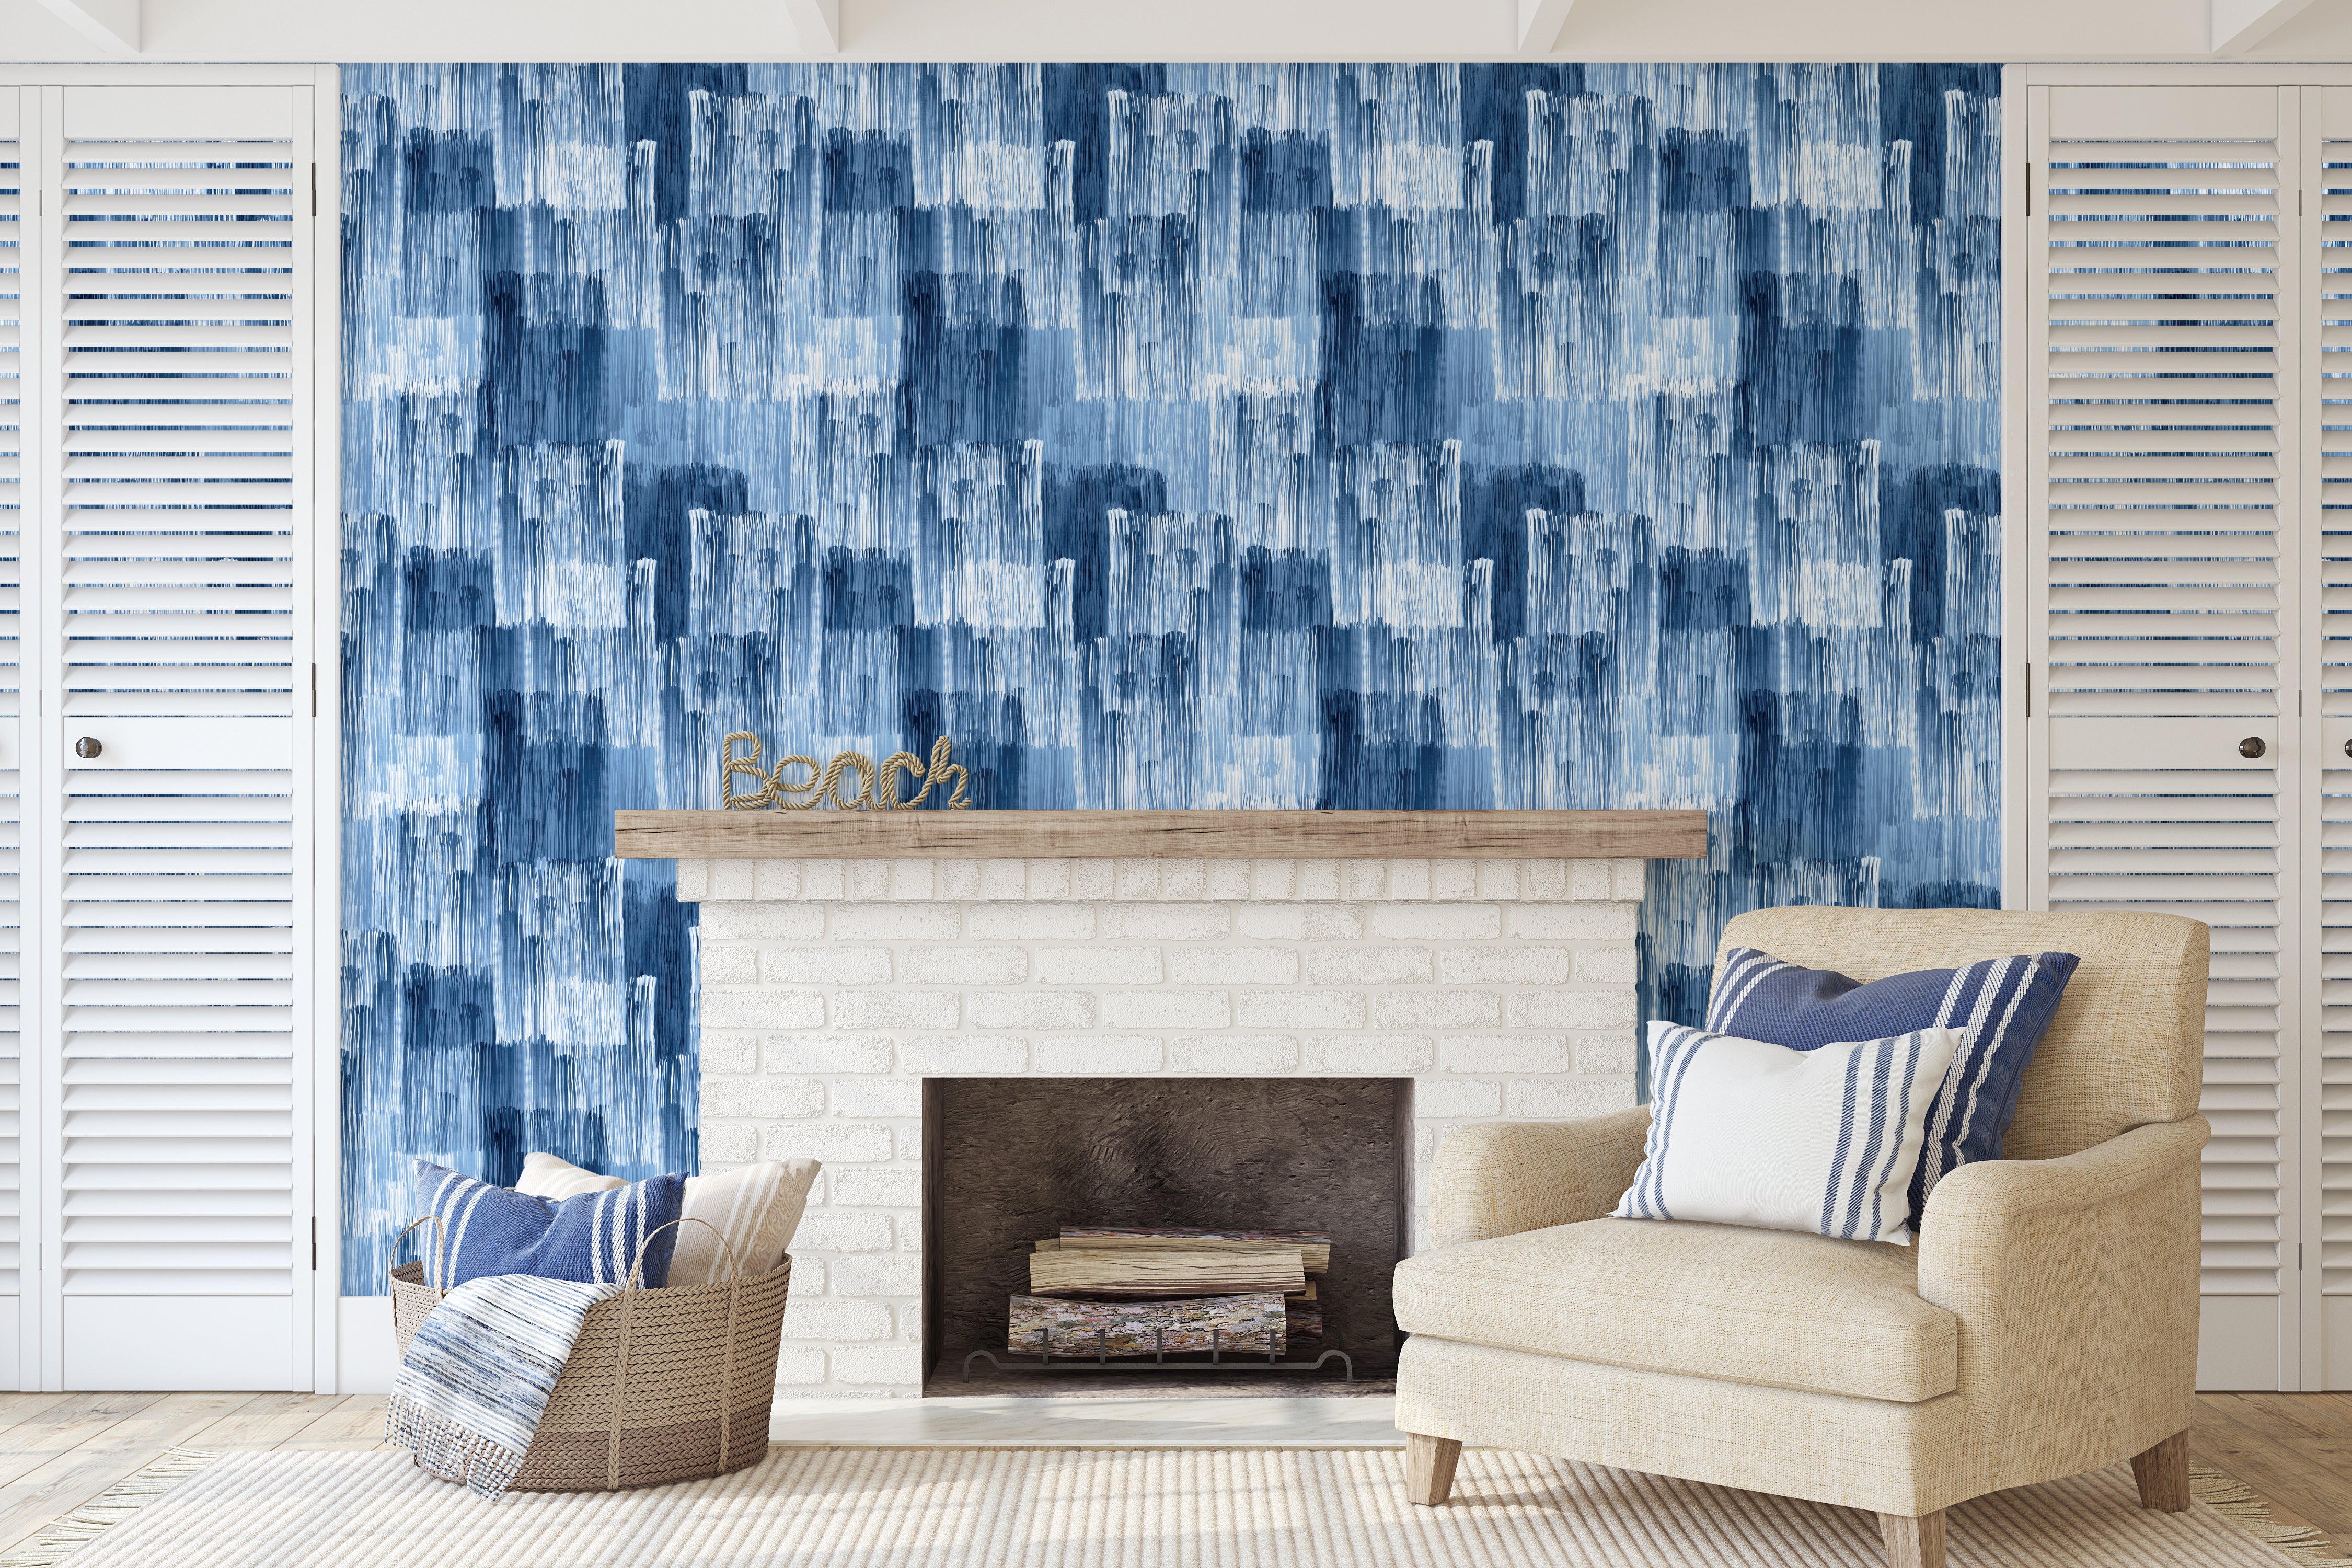 Indigo Wallpaper - Wall Blush from WALL BLUSH